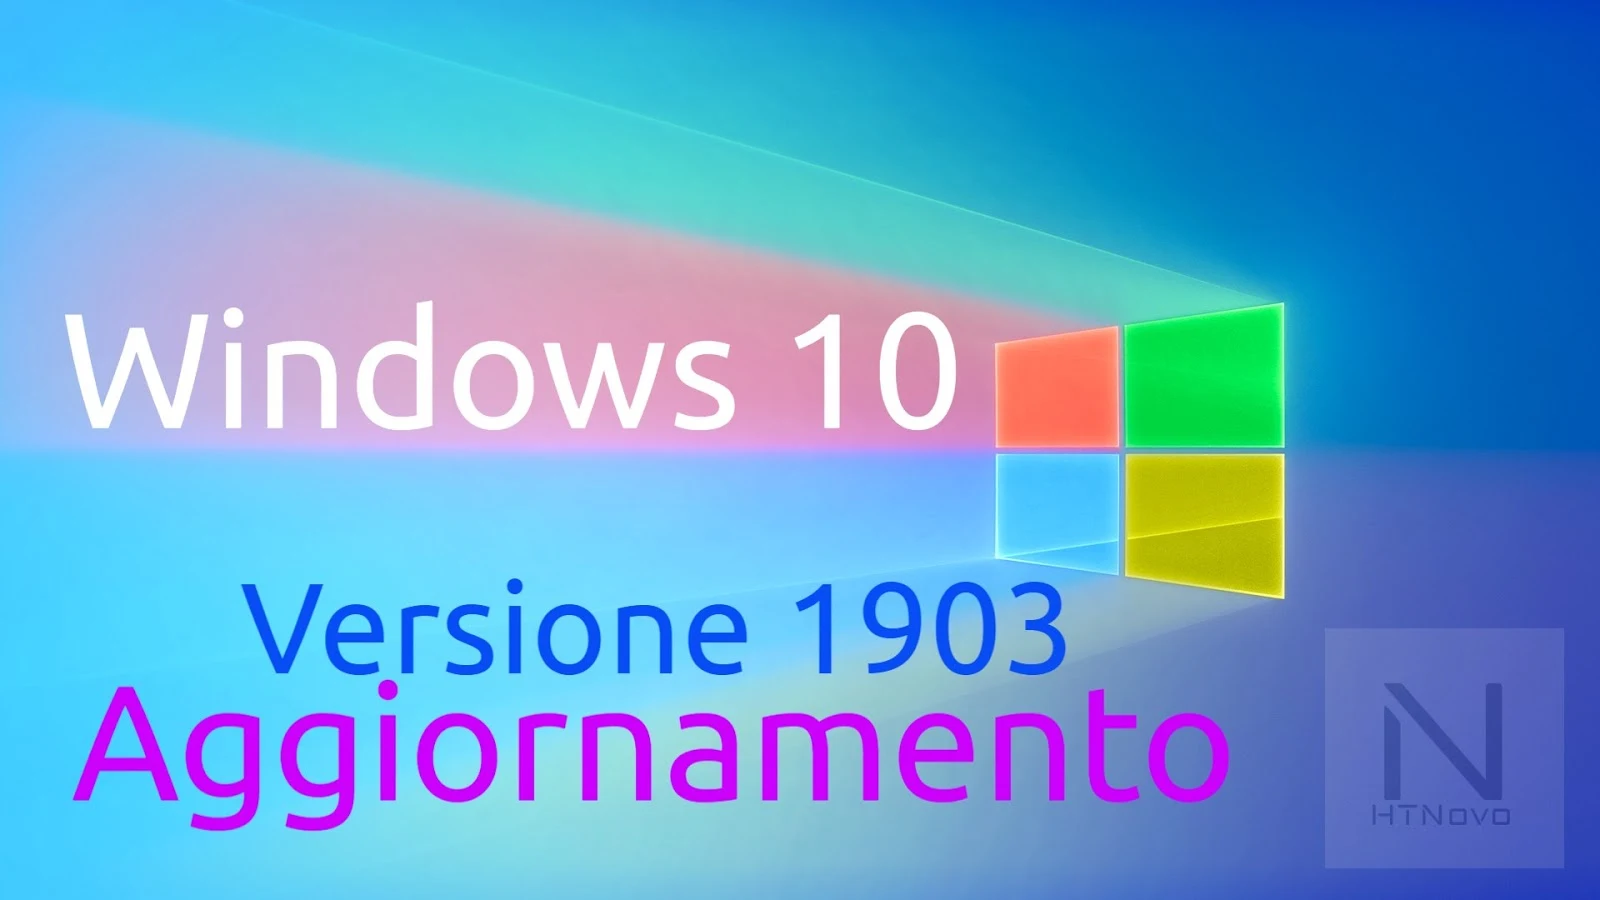 Windows-10-v1903-may-2019-update-aggiornamento